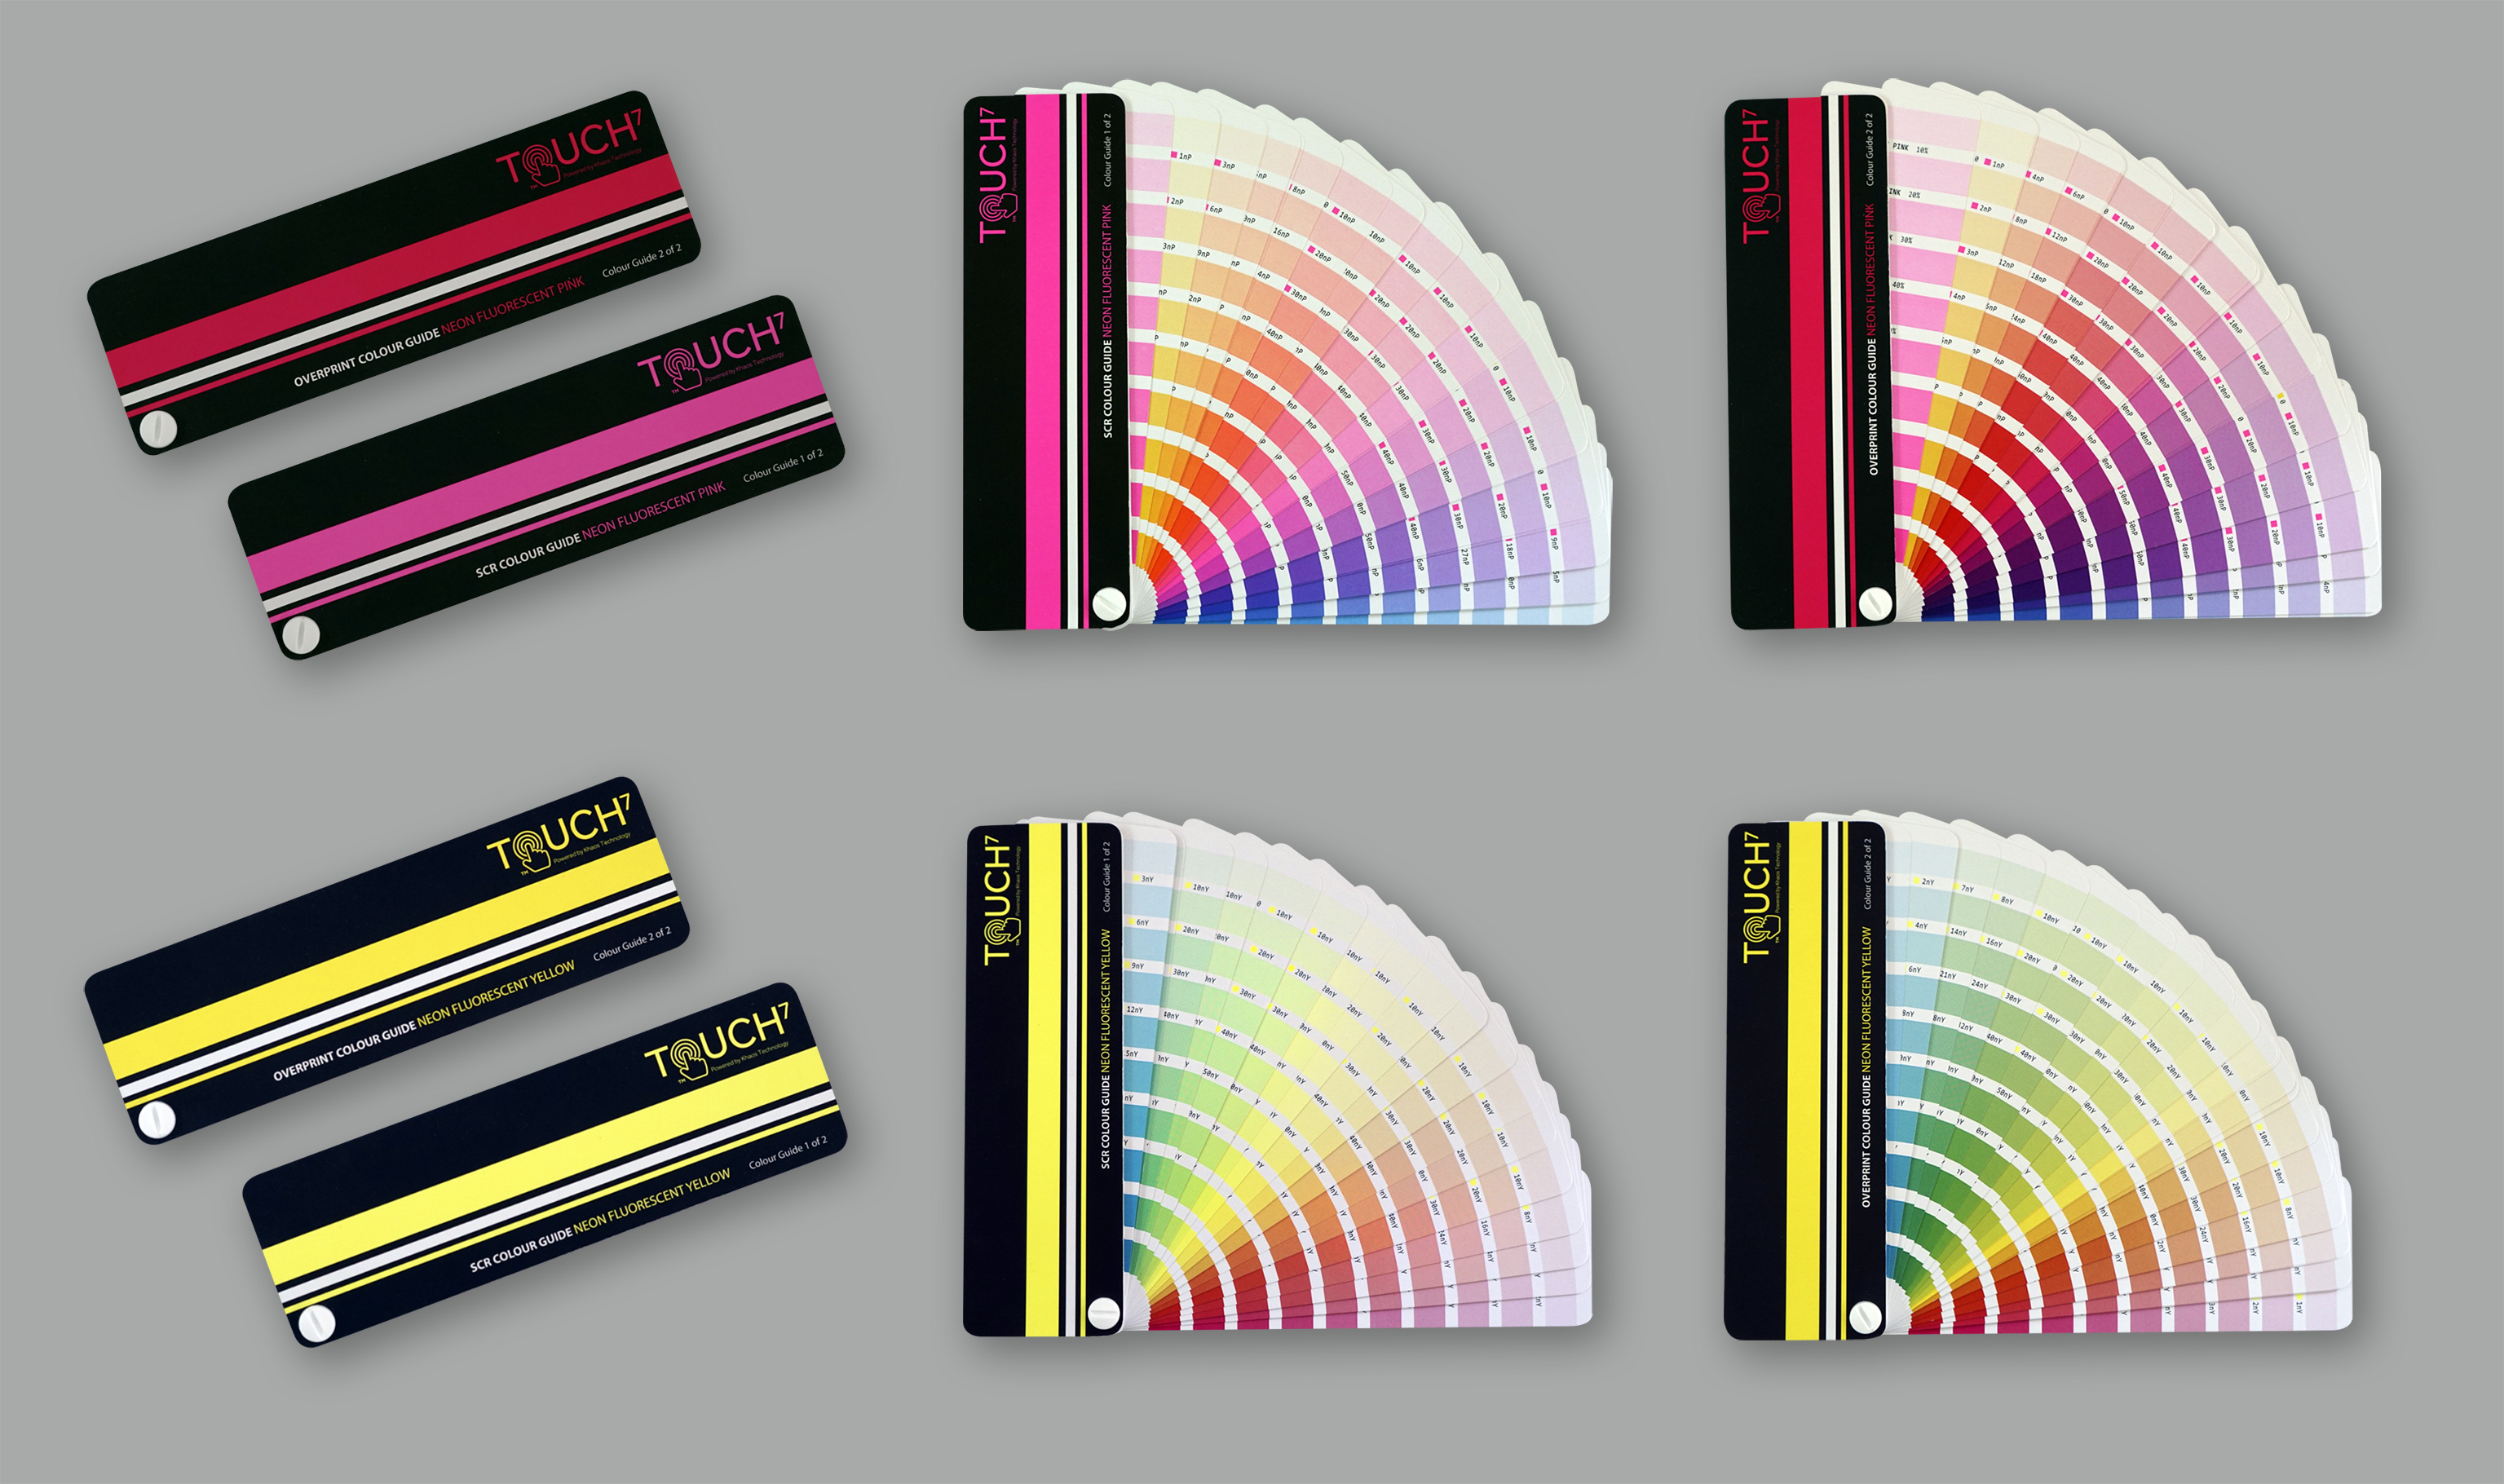 С помощью четырех неоновых цветовых шкал Touch7 можно воспроизводить 1520 цветов